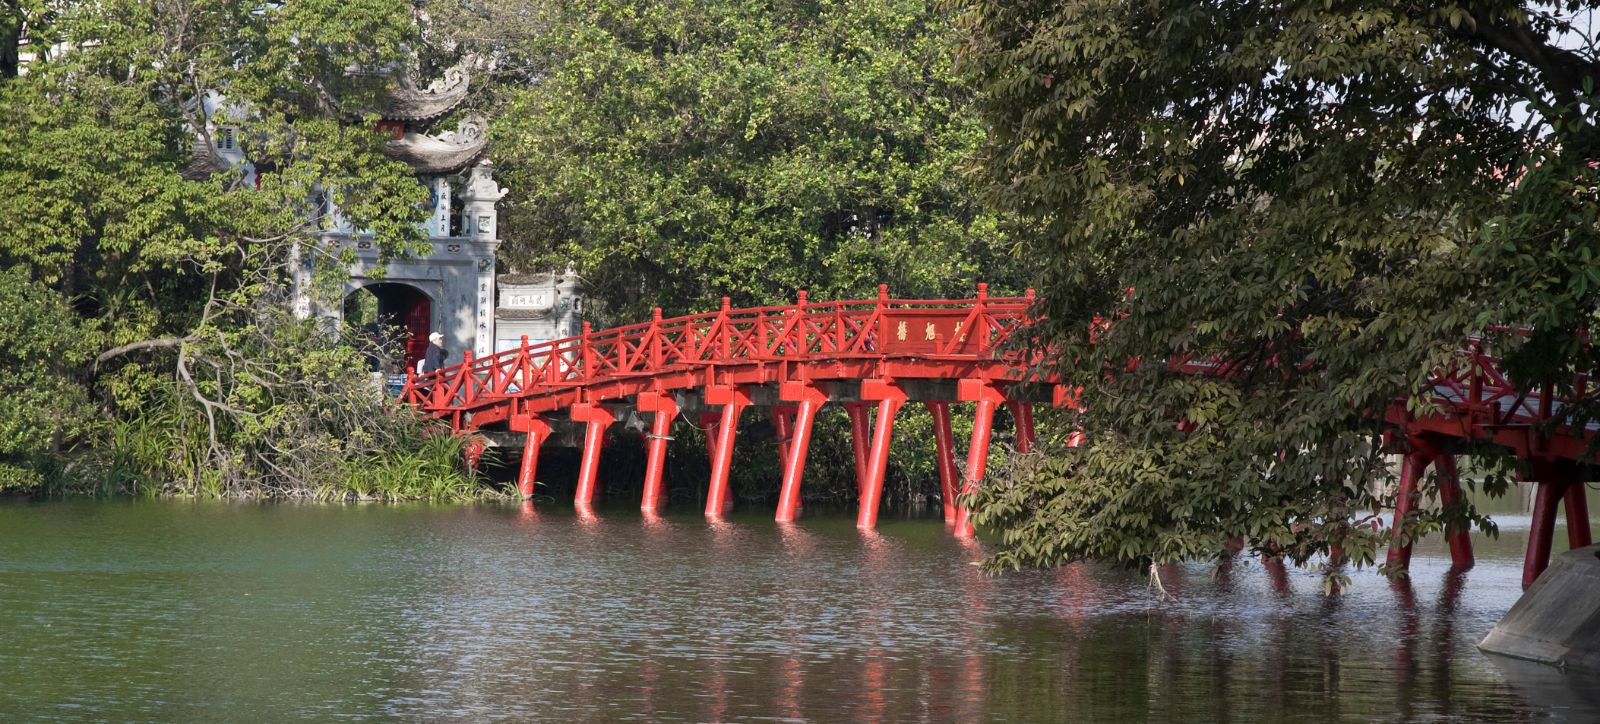 Cầu Thê Húc - Mảng lụa đỏ giữa lòng hồ Gươm